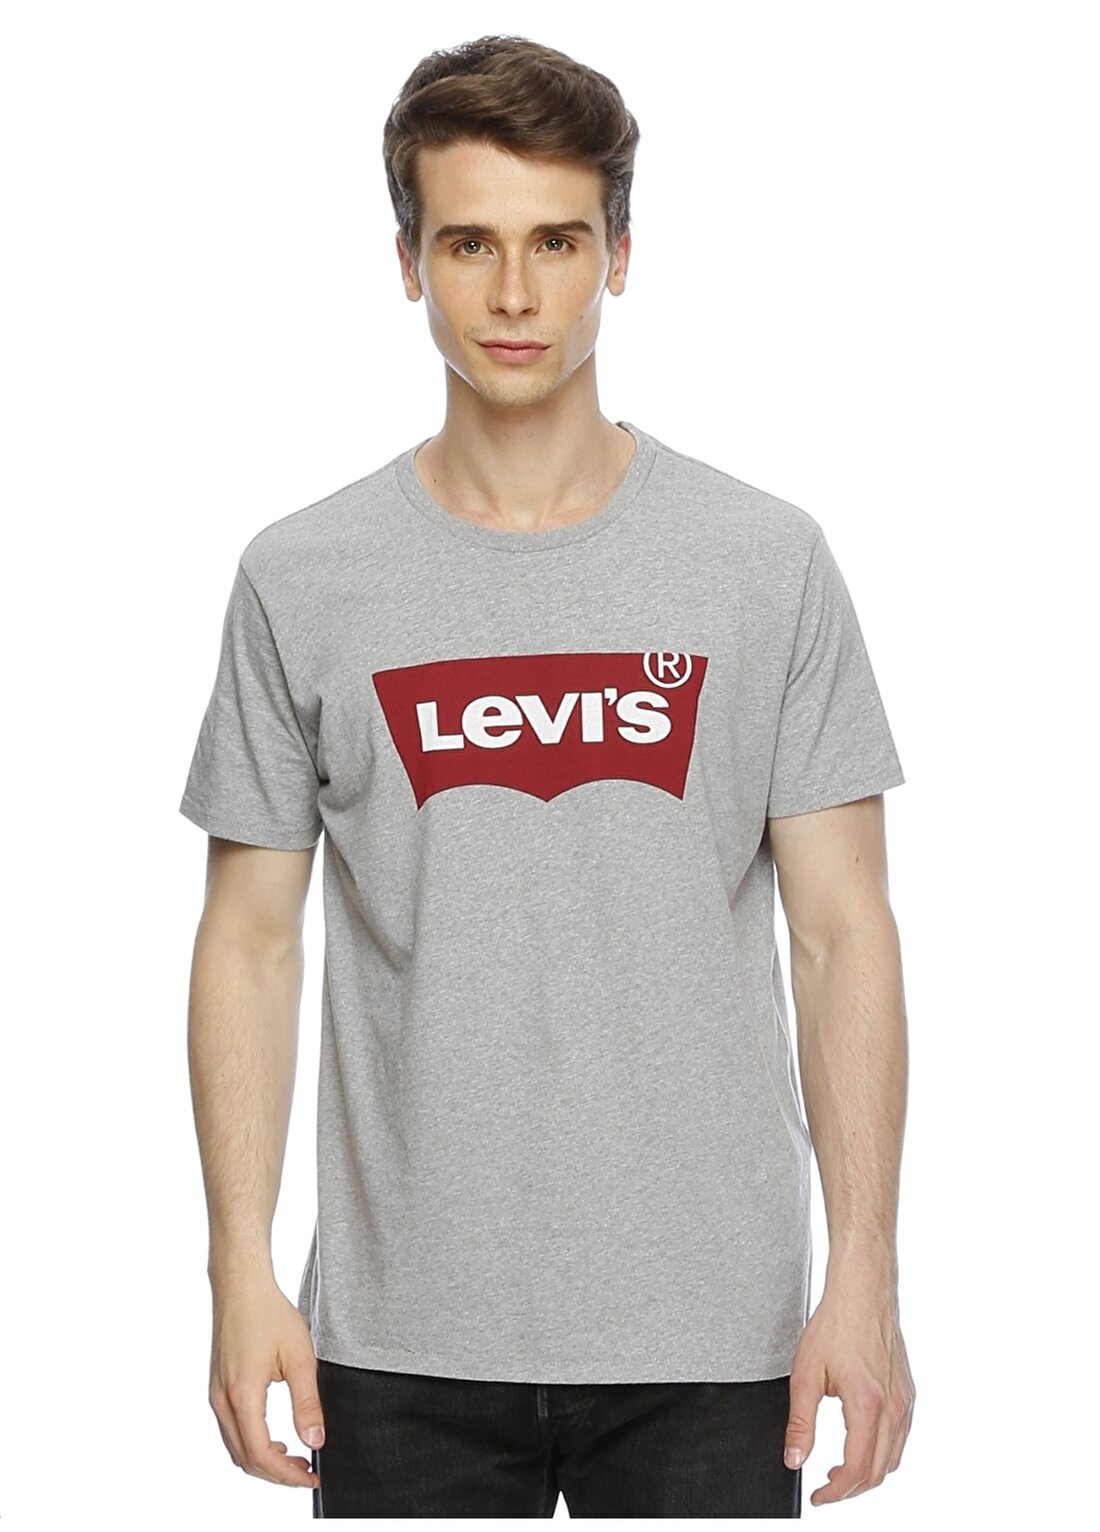 Levis 17783-0138 Graphic Setin Neck Graph T-Shirt